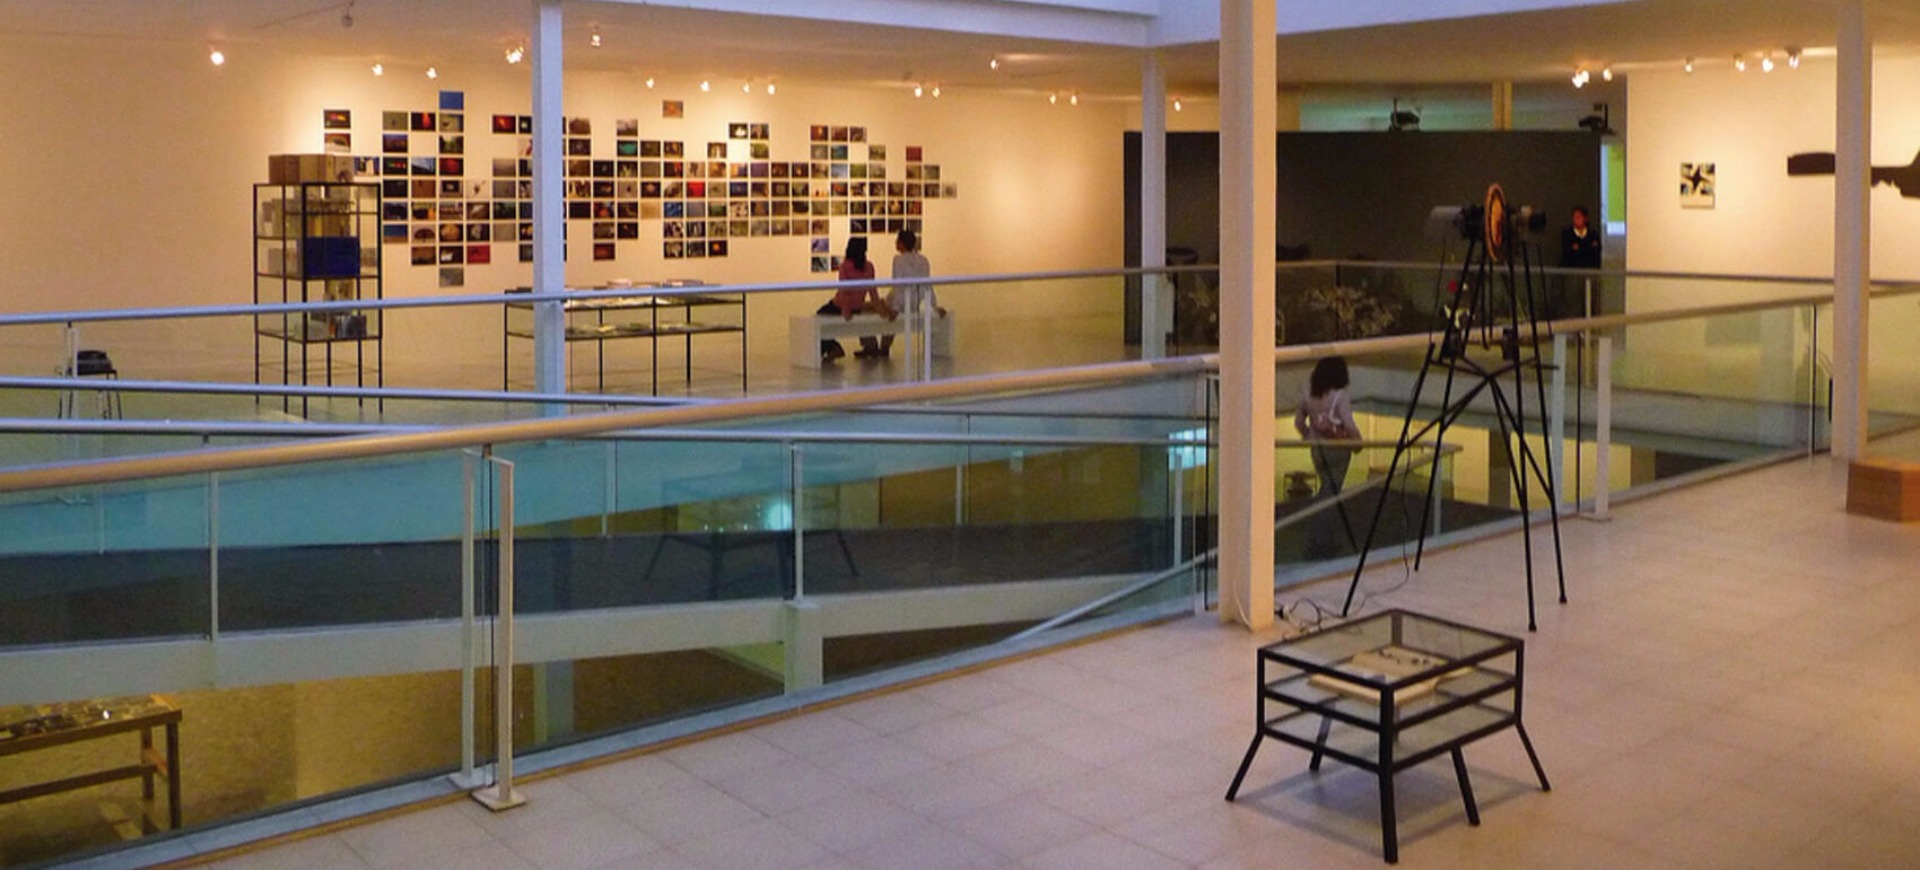 Museo de Arte Carrillo Gil (MACG)